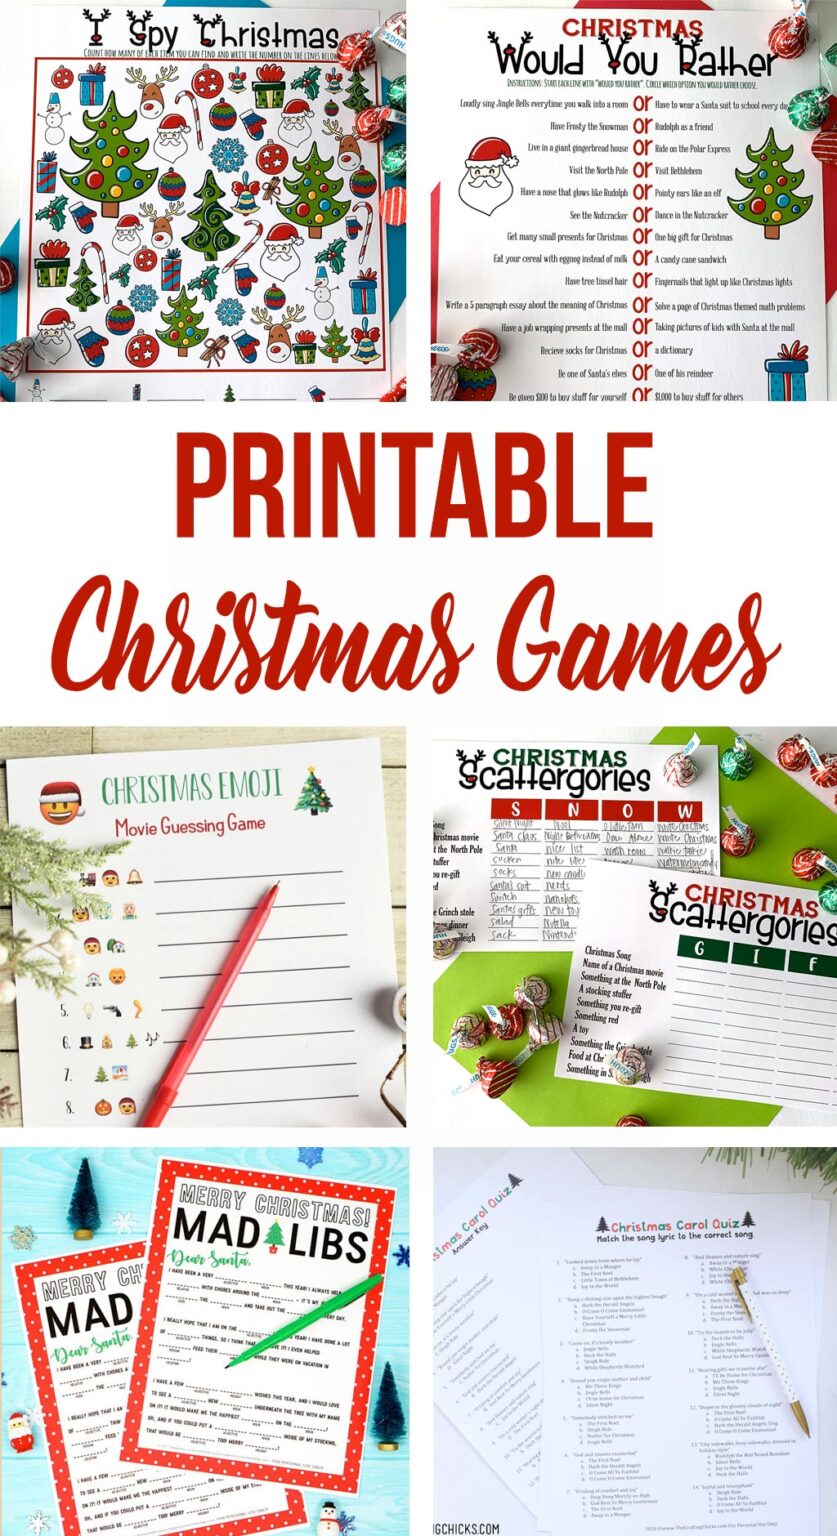 Printable Christmas Games - The Crafting Chicks